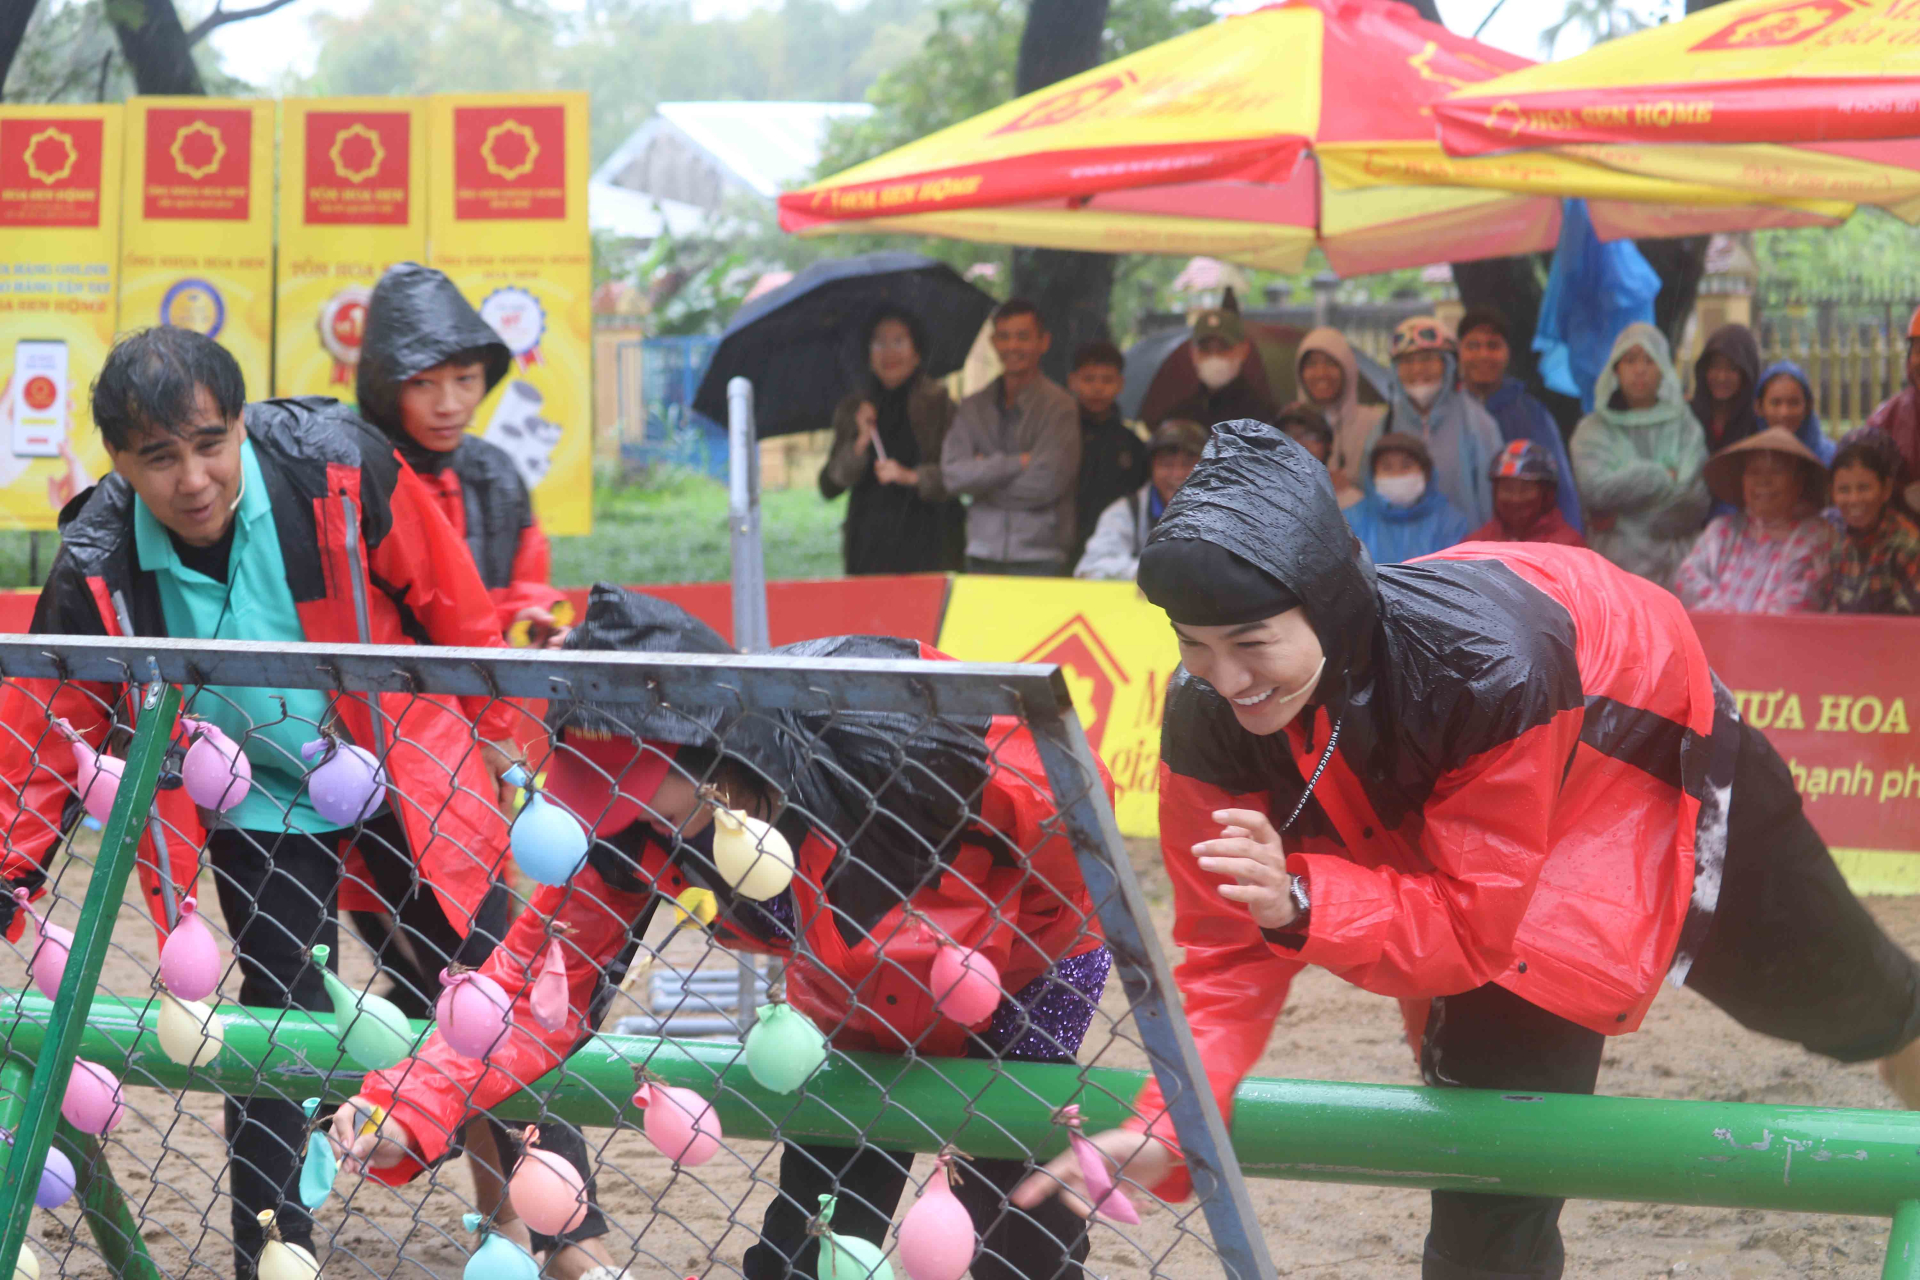 NSND Thanh Lam dầm mưa, nổ lực hết mình cùng Ali Hoàng Dương chiến thắng thử thách để đạt giải thưởng cho trẻ em nghèo - ảnh 3